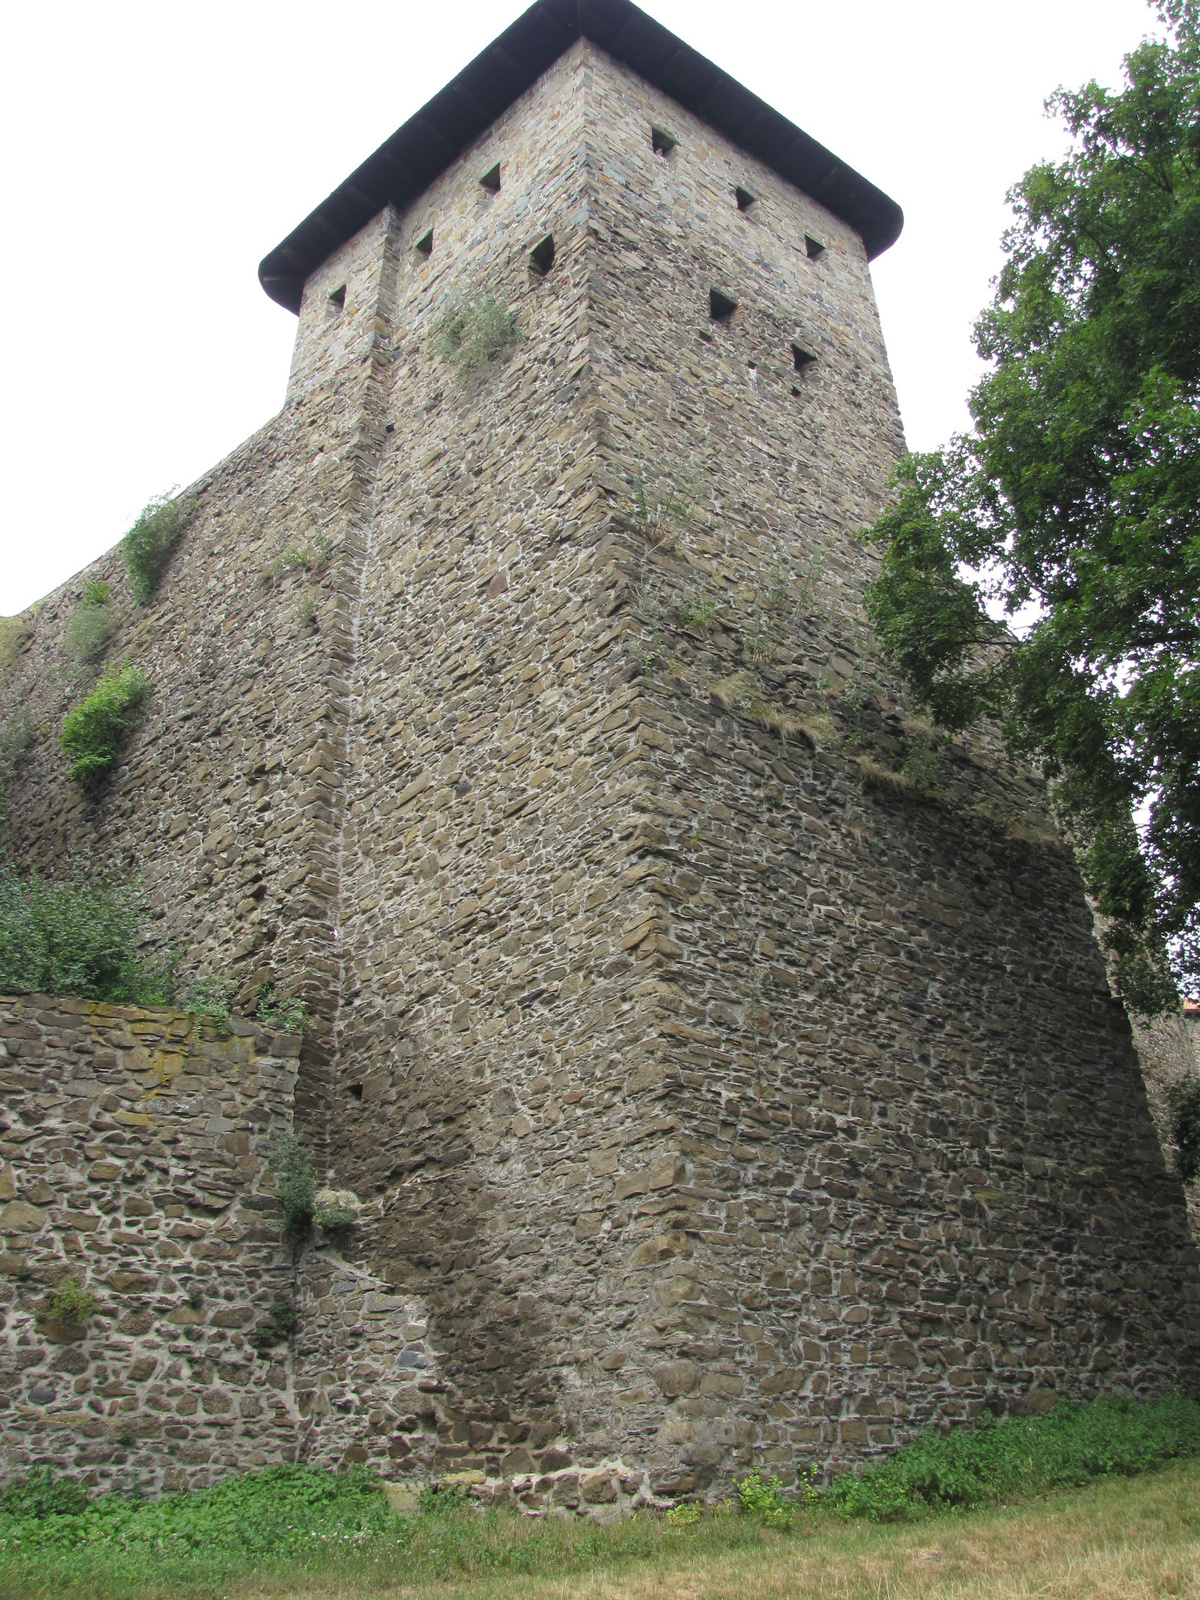 Týn nad Bečvou, Helfštýn, a vár